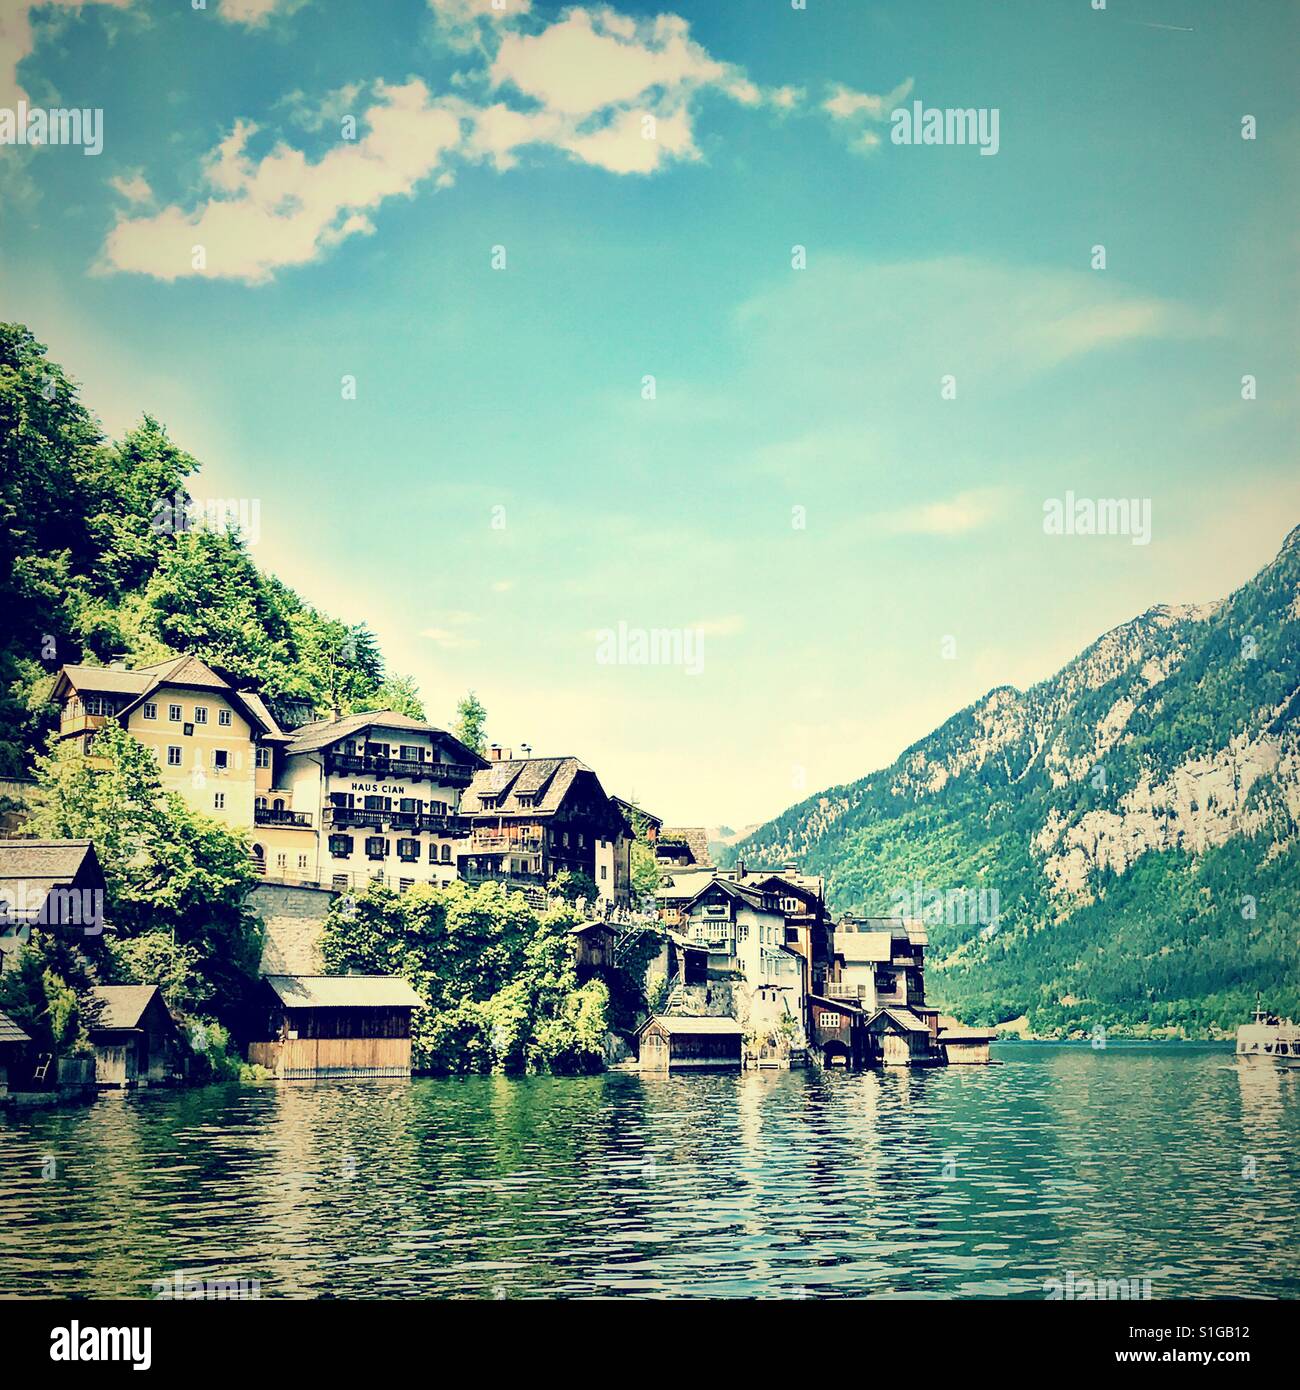 Muchas de las casas a lo largo de la ladera junto a un lago en halldstatt, Austria Foto de stock